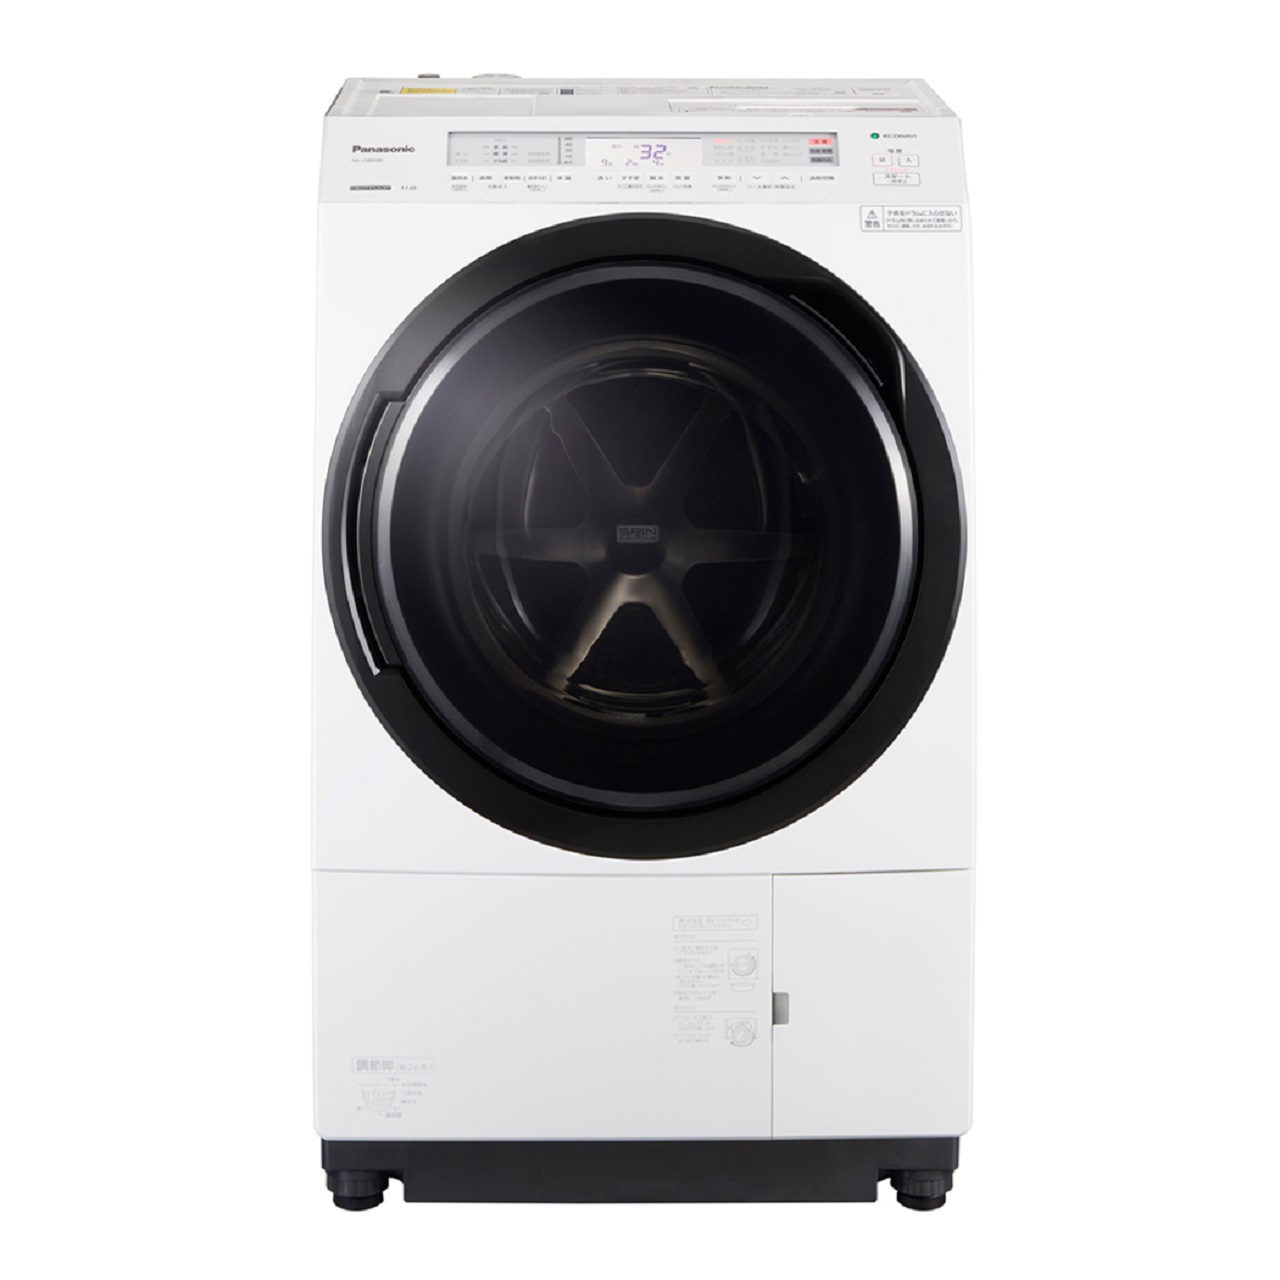 パナソニックNA-VX800Bななめドラム洗濯乾燥機